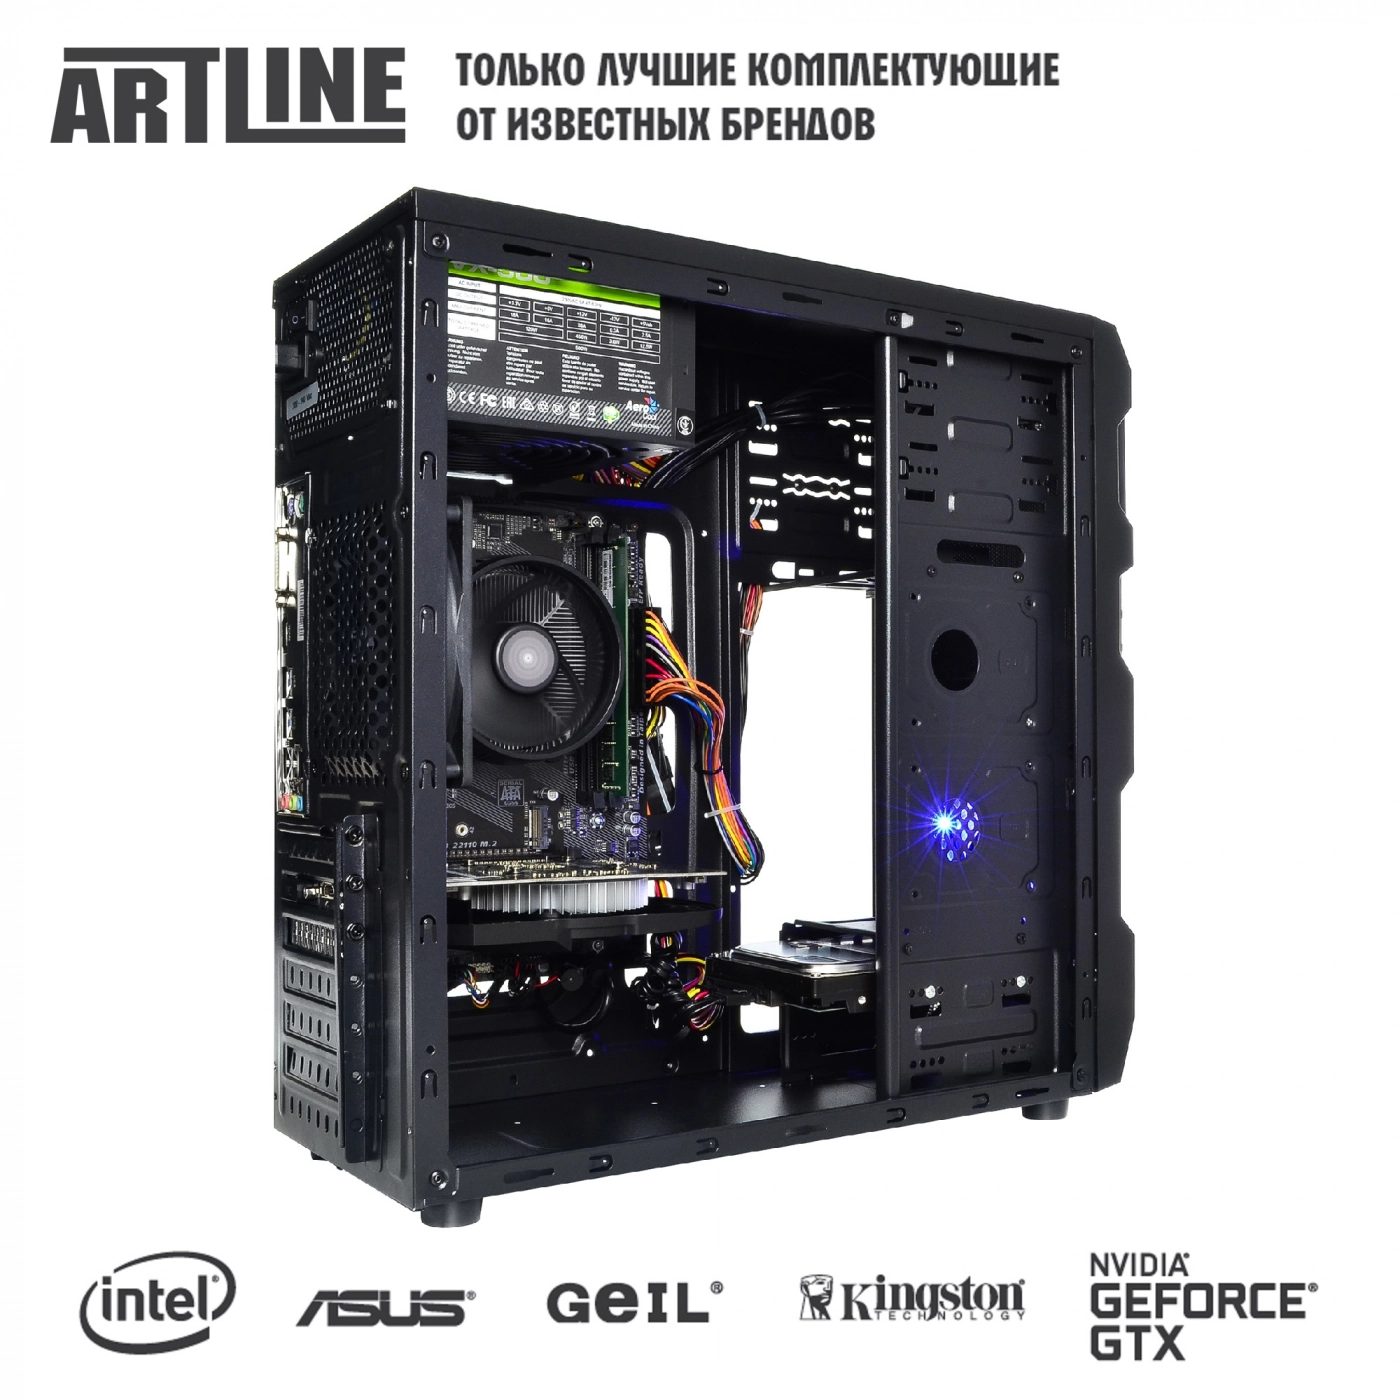 Купить Компьютер ARTLINE Gaming X31v16 - фото 6